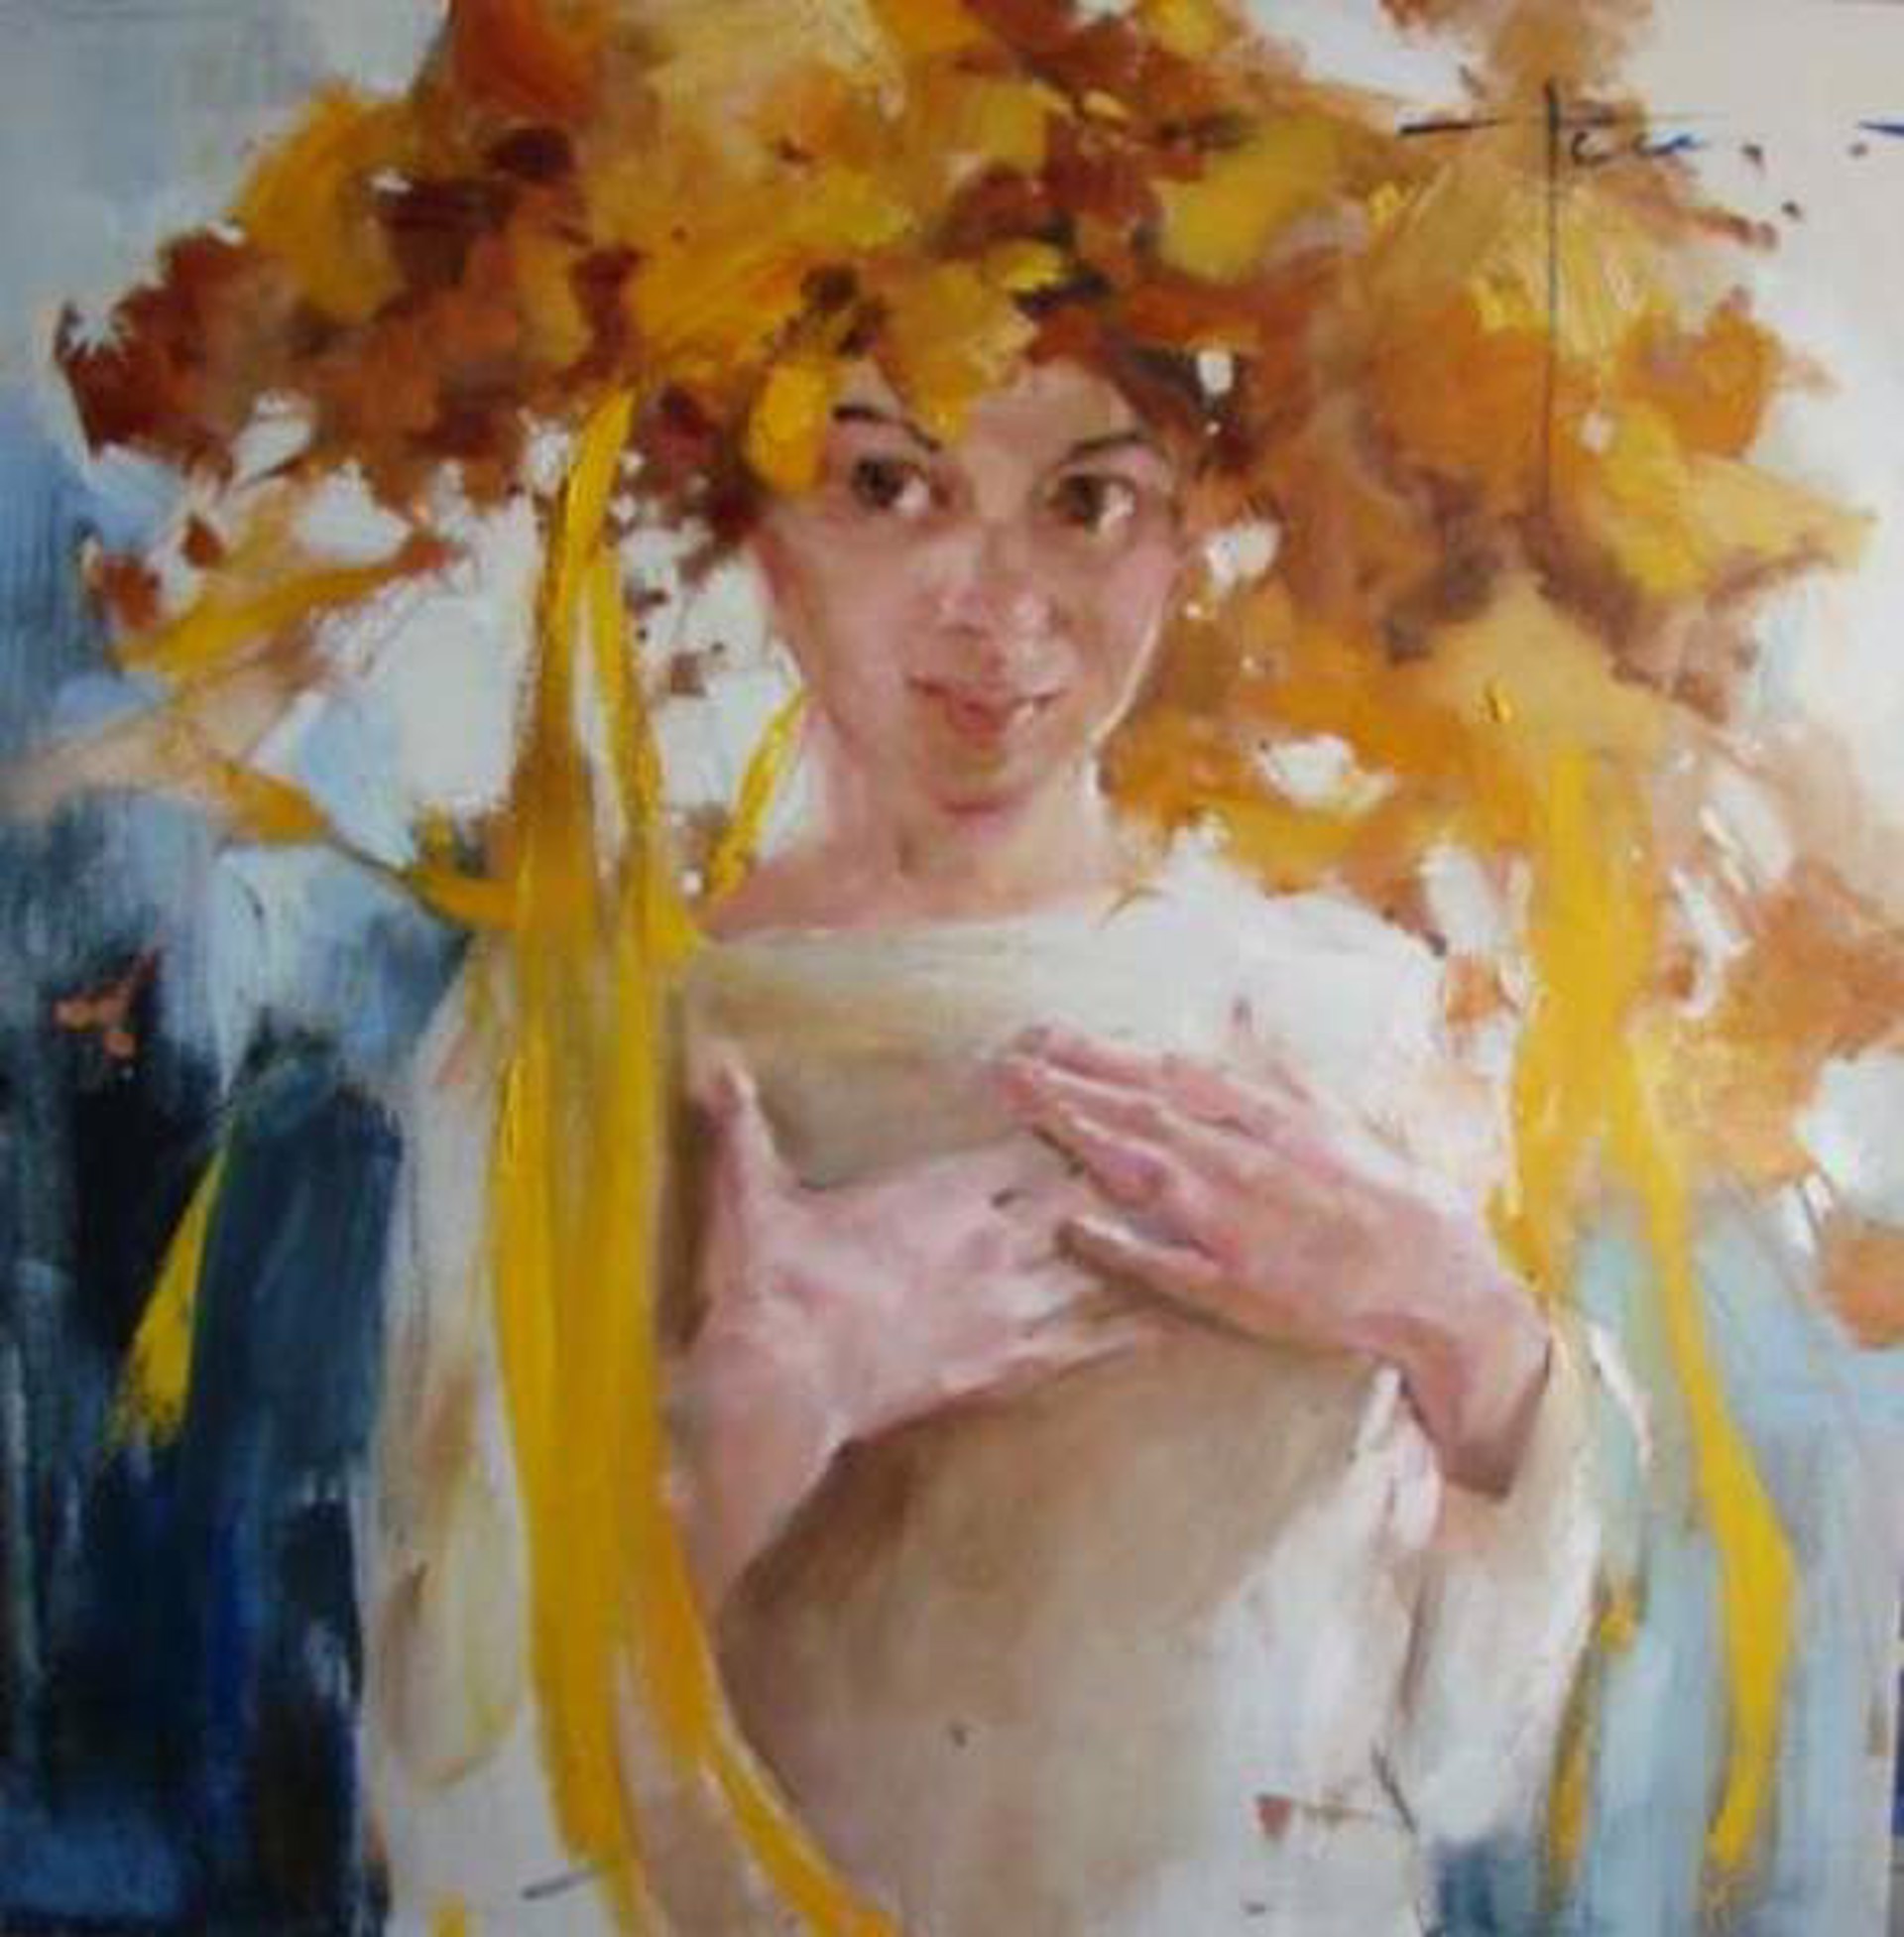 Flowers in Her Hair by Yana Golubyatnikova